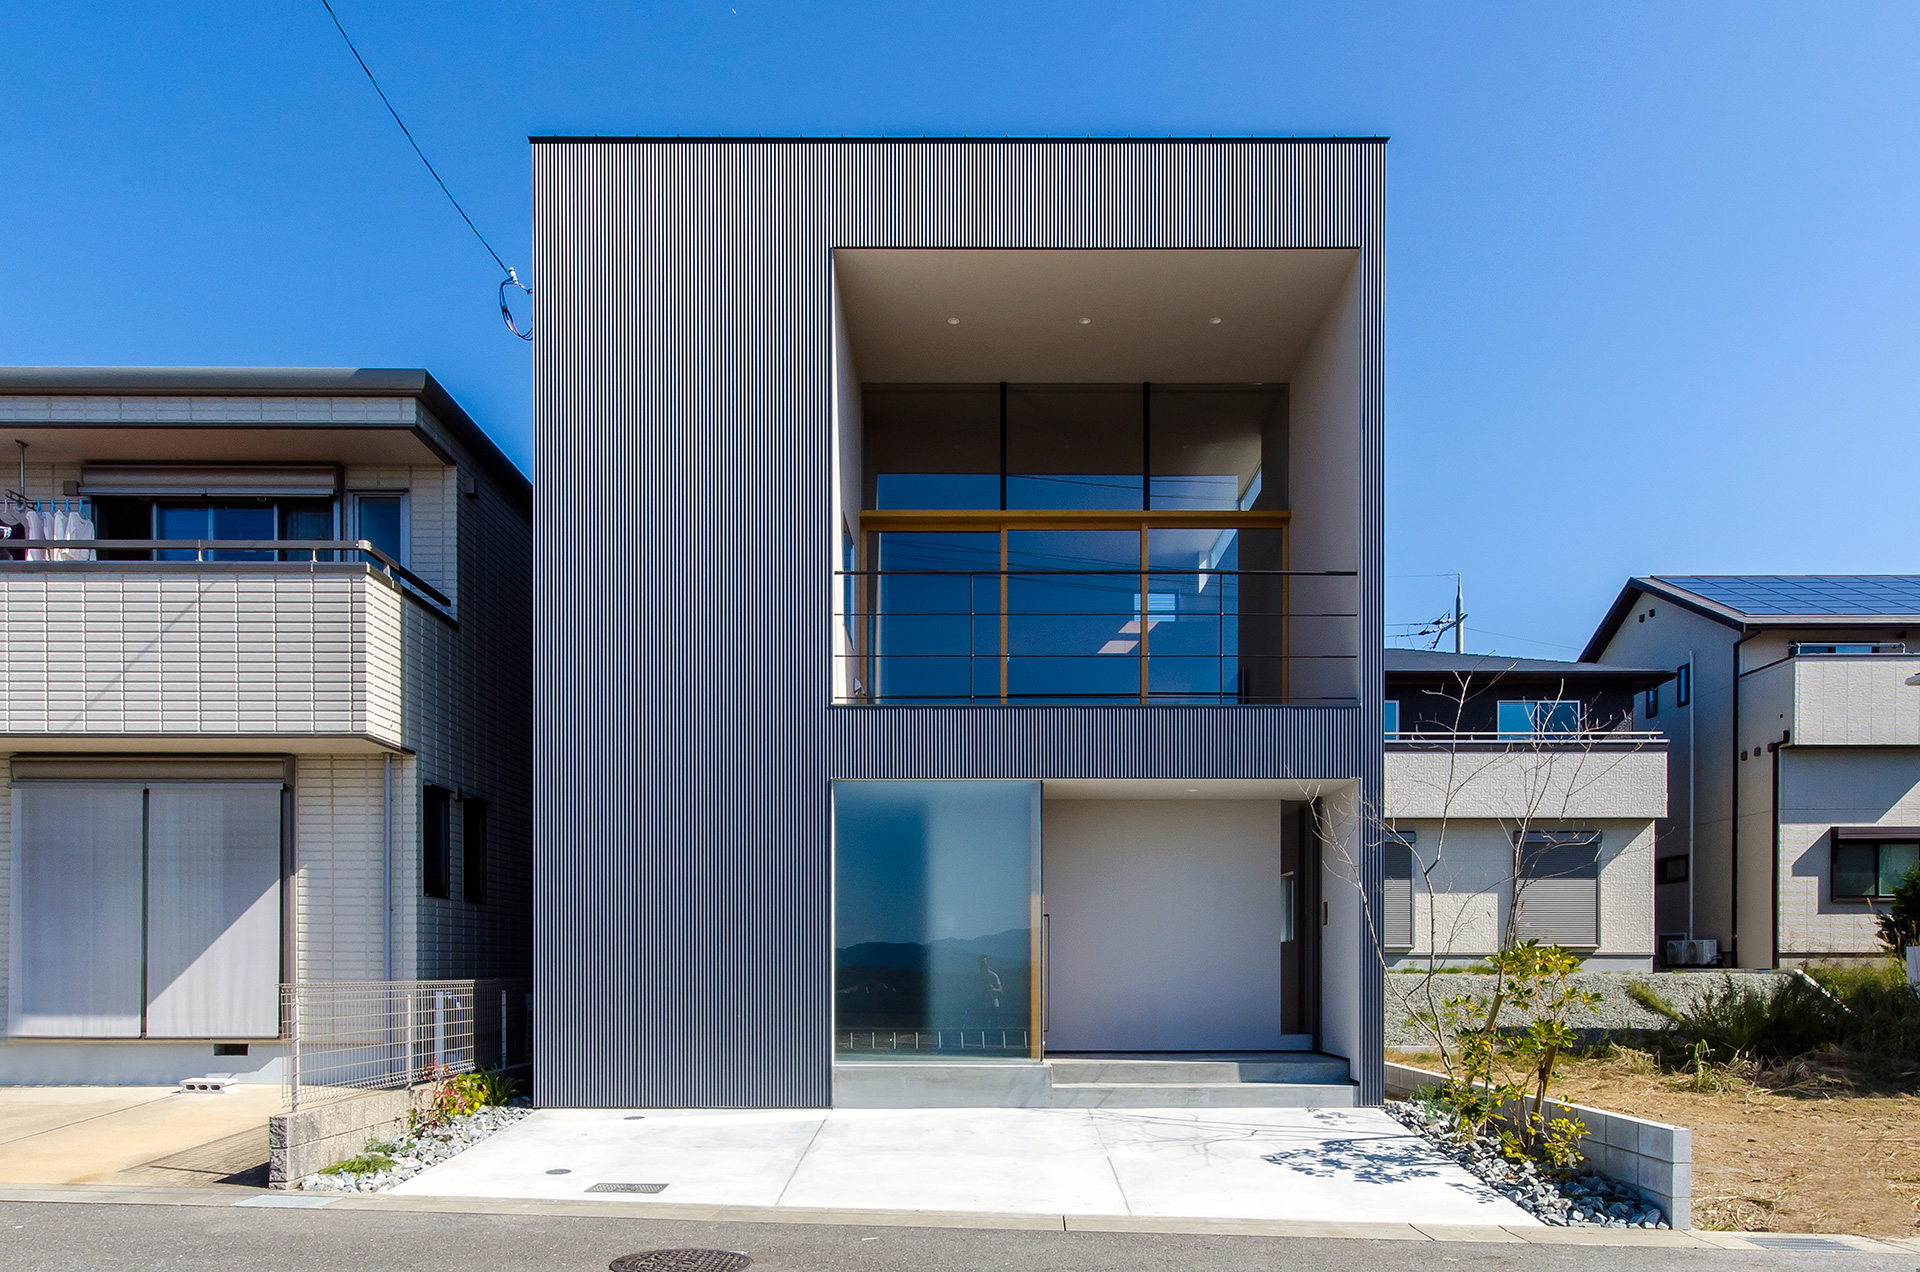 大阪府箕面市に計画された注文住宅,眺望の良い住まい,ガルバリウム鋼板の外観